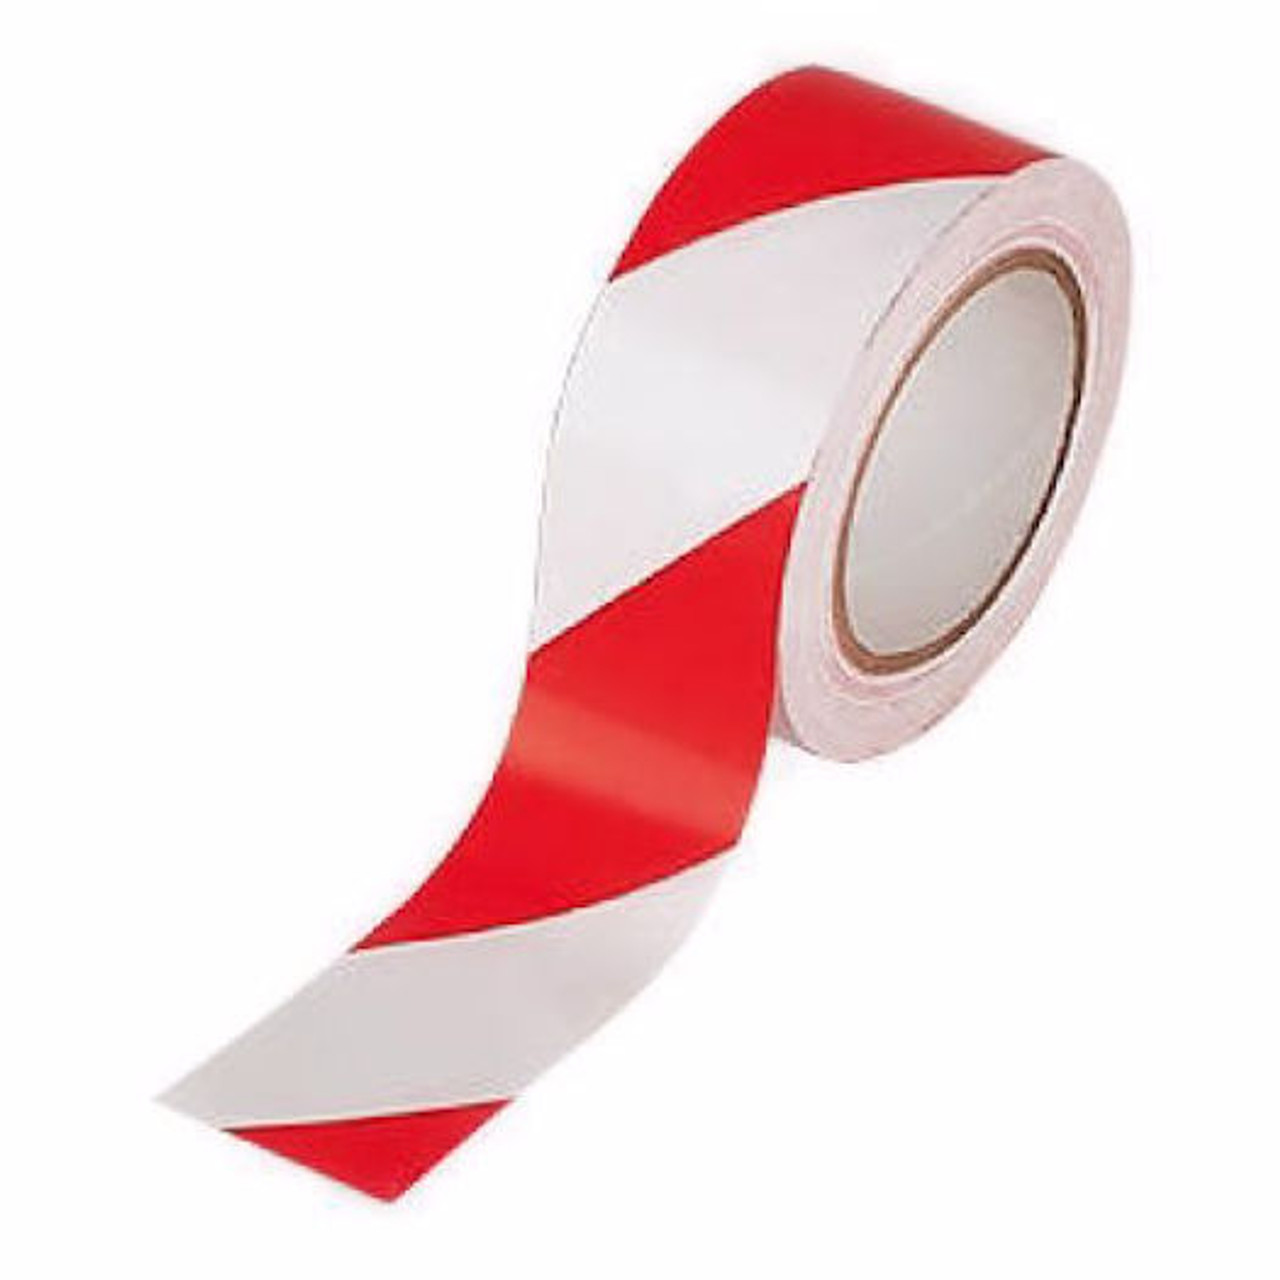  Roll Hazard Tape 50mm x 33m Red & White 